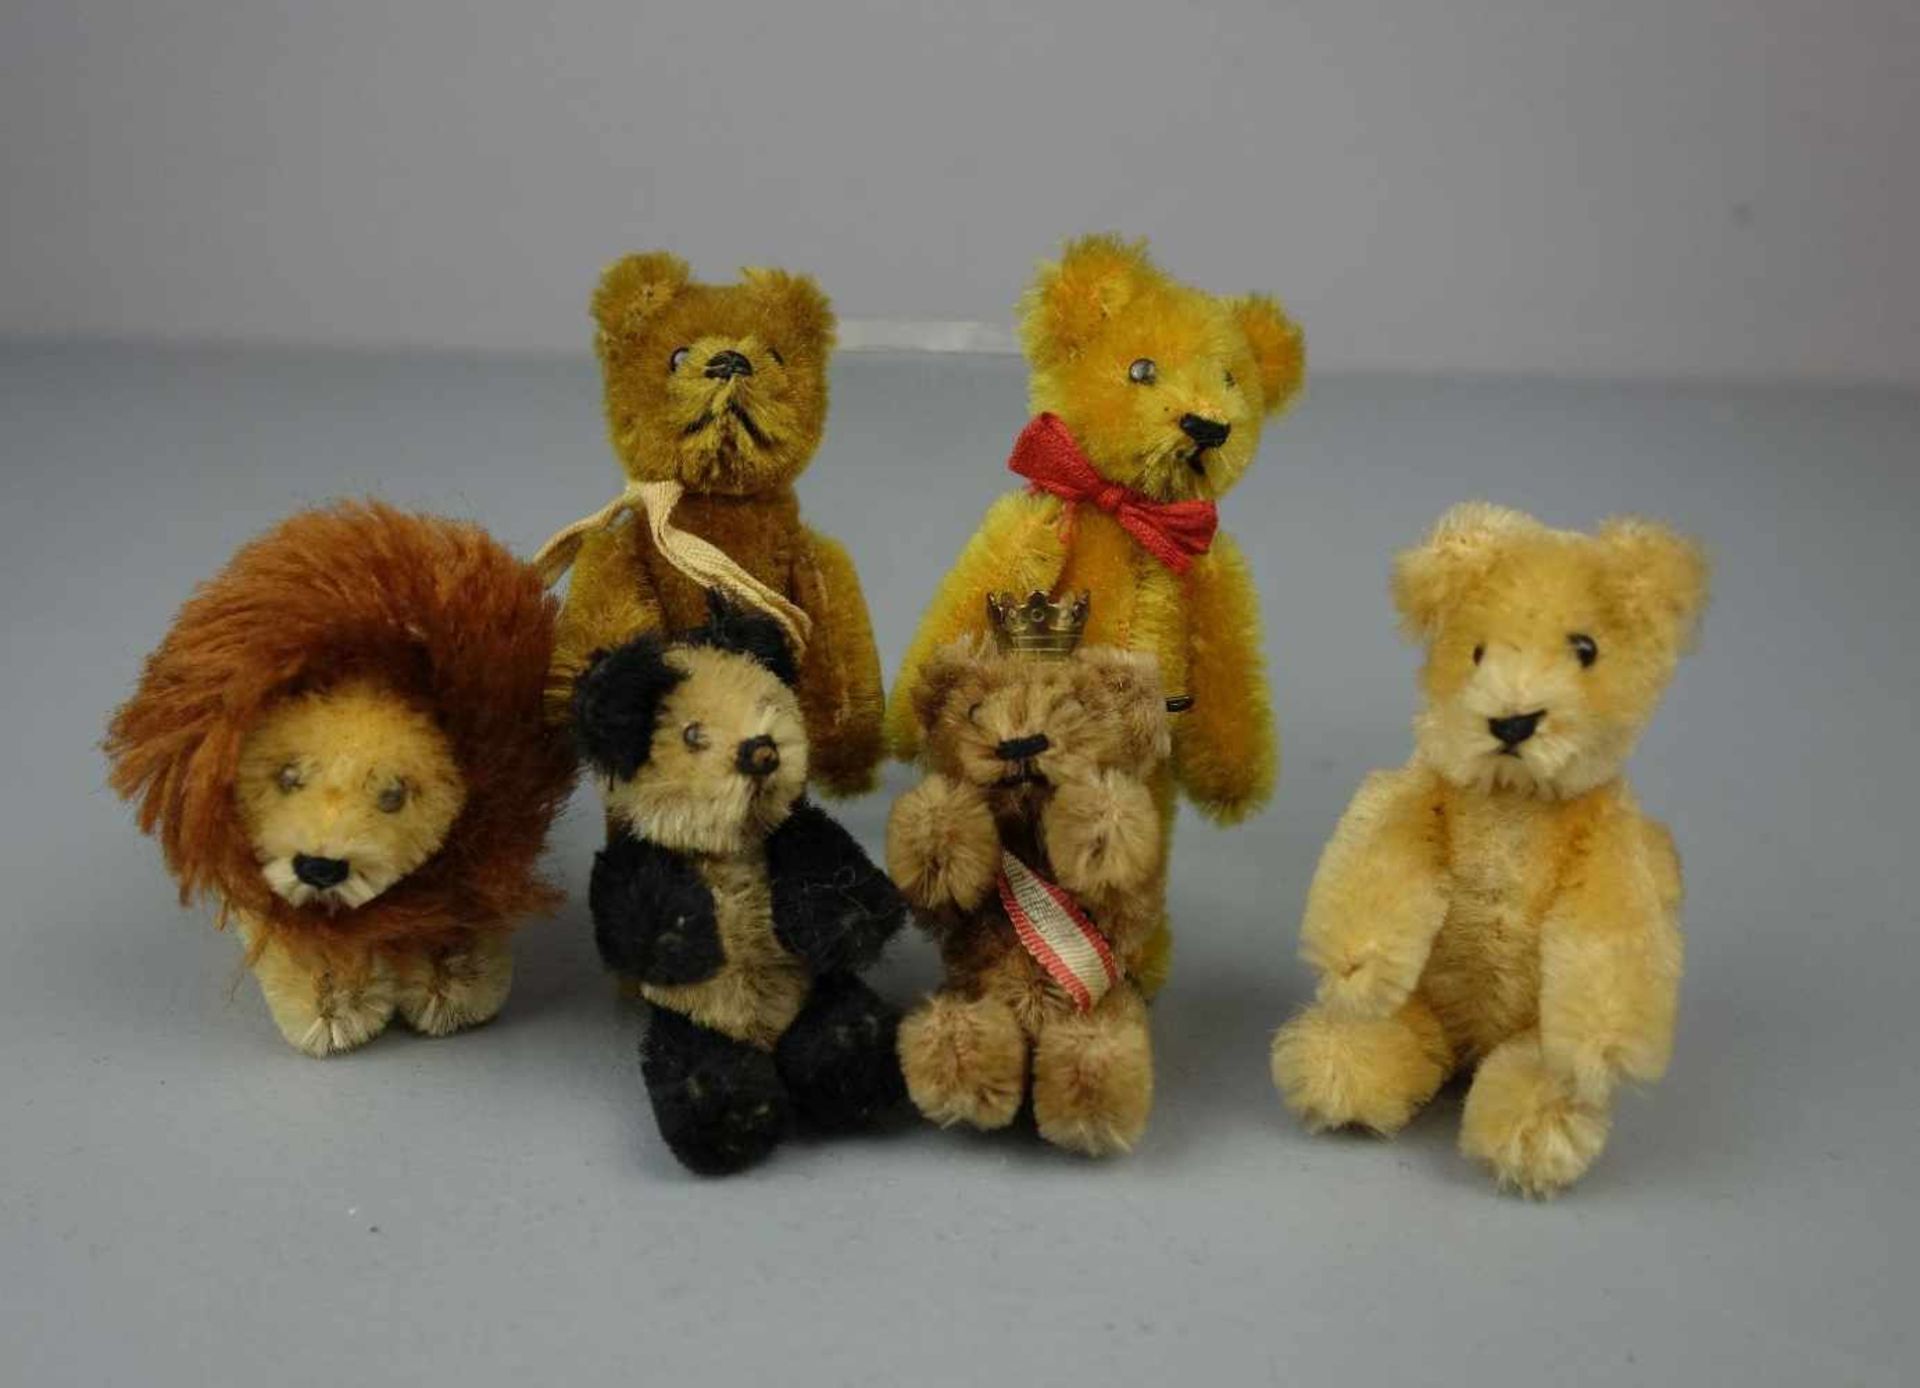 KONVOLUT MINIATUR PLÜSCHFIGUREN: 5 TEDDYBÄREN UND 1 LÖWE / lion and teddy bears, Mitte 20. Jh.;